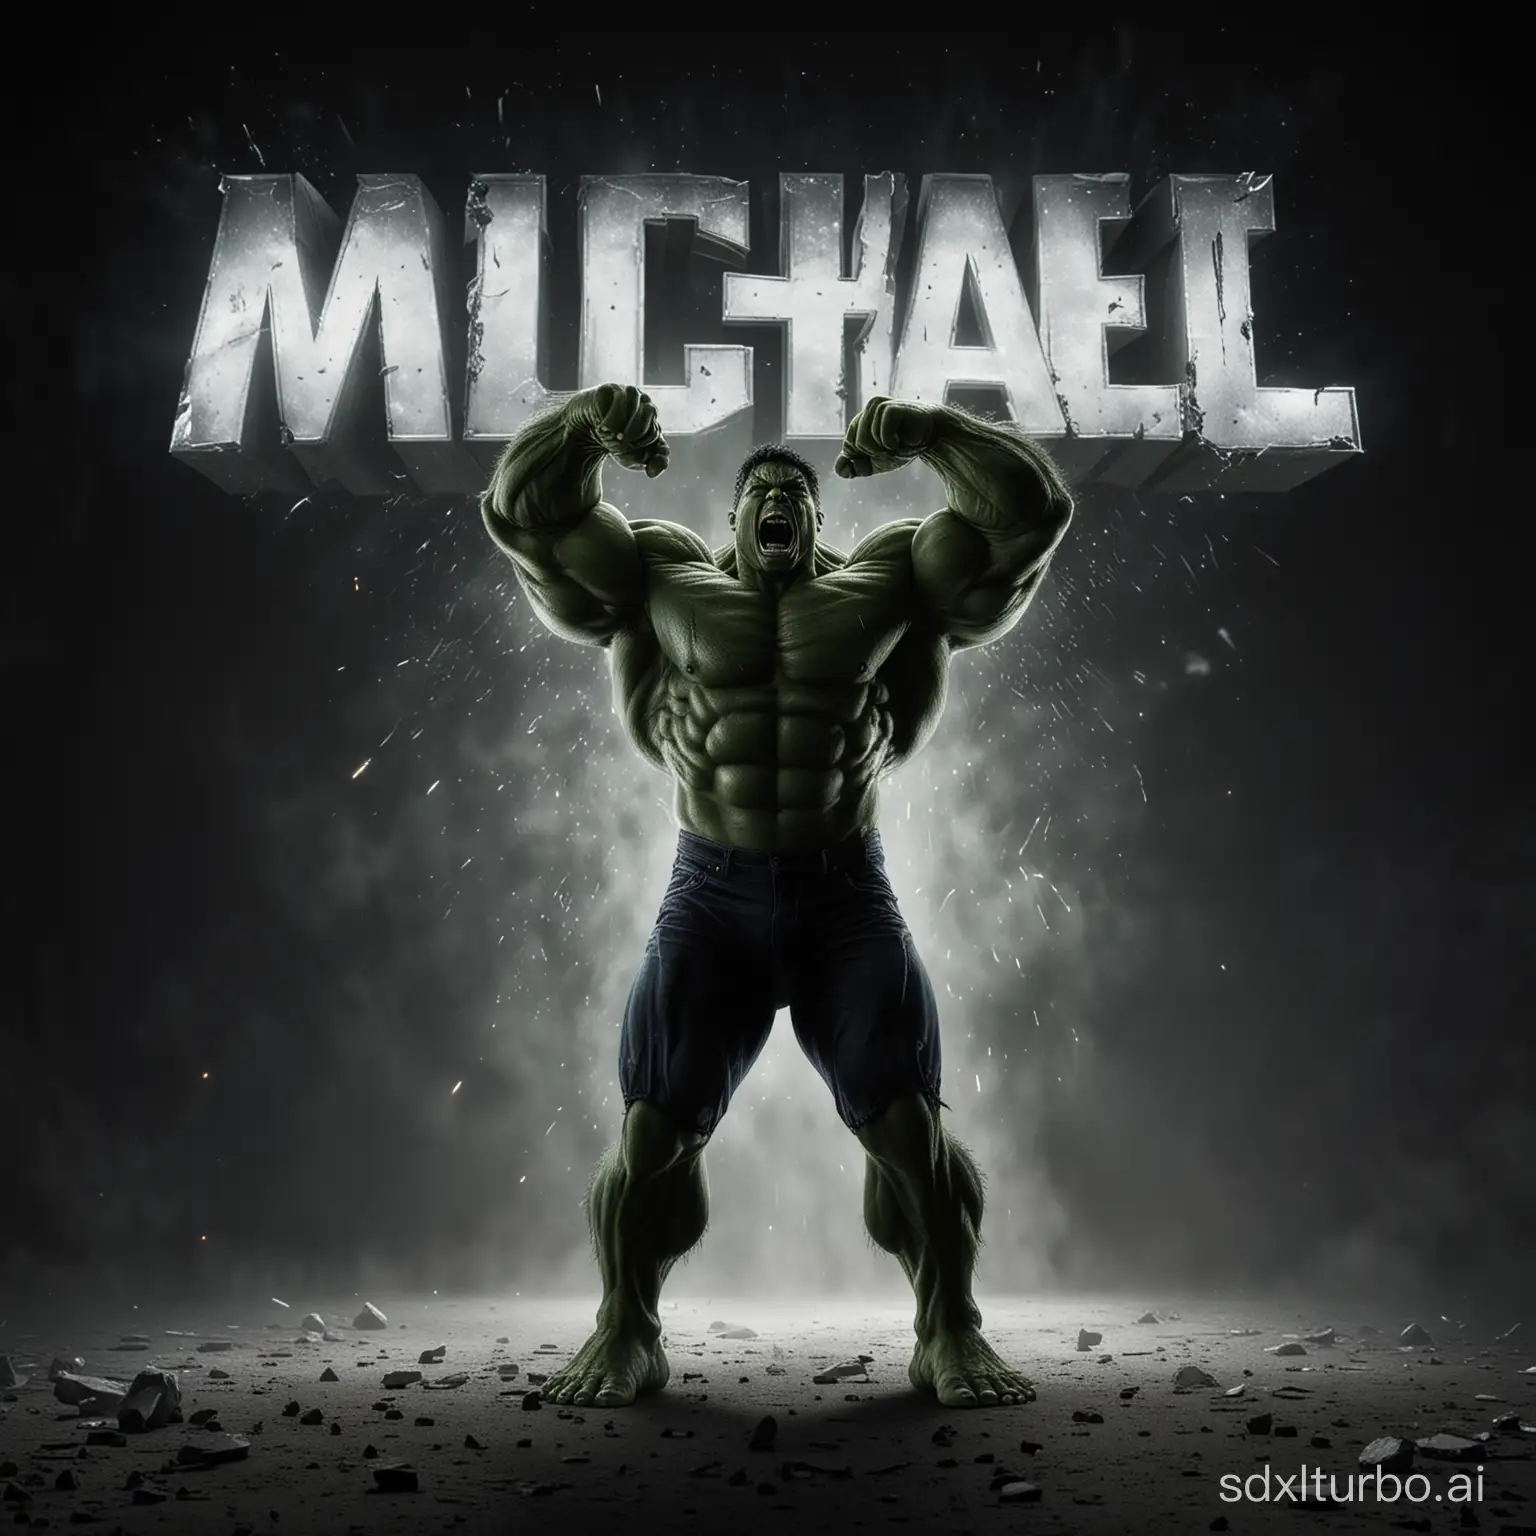 Michael-HulkLike-Figure-Screaming-at-Glowing-Headline-in-Cinematic-Lighting